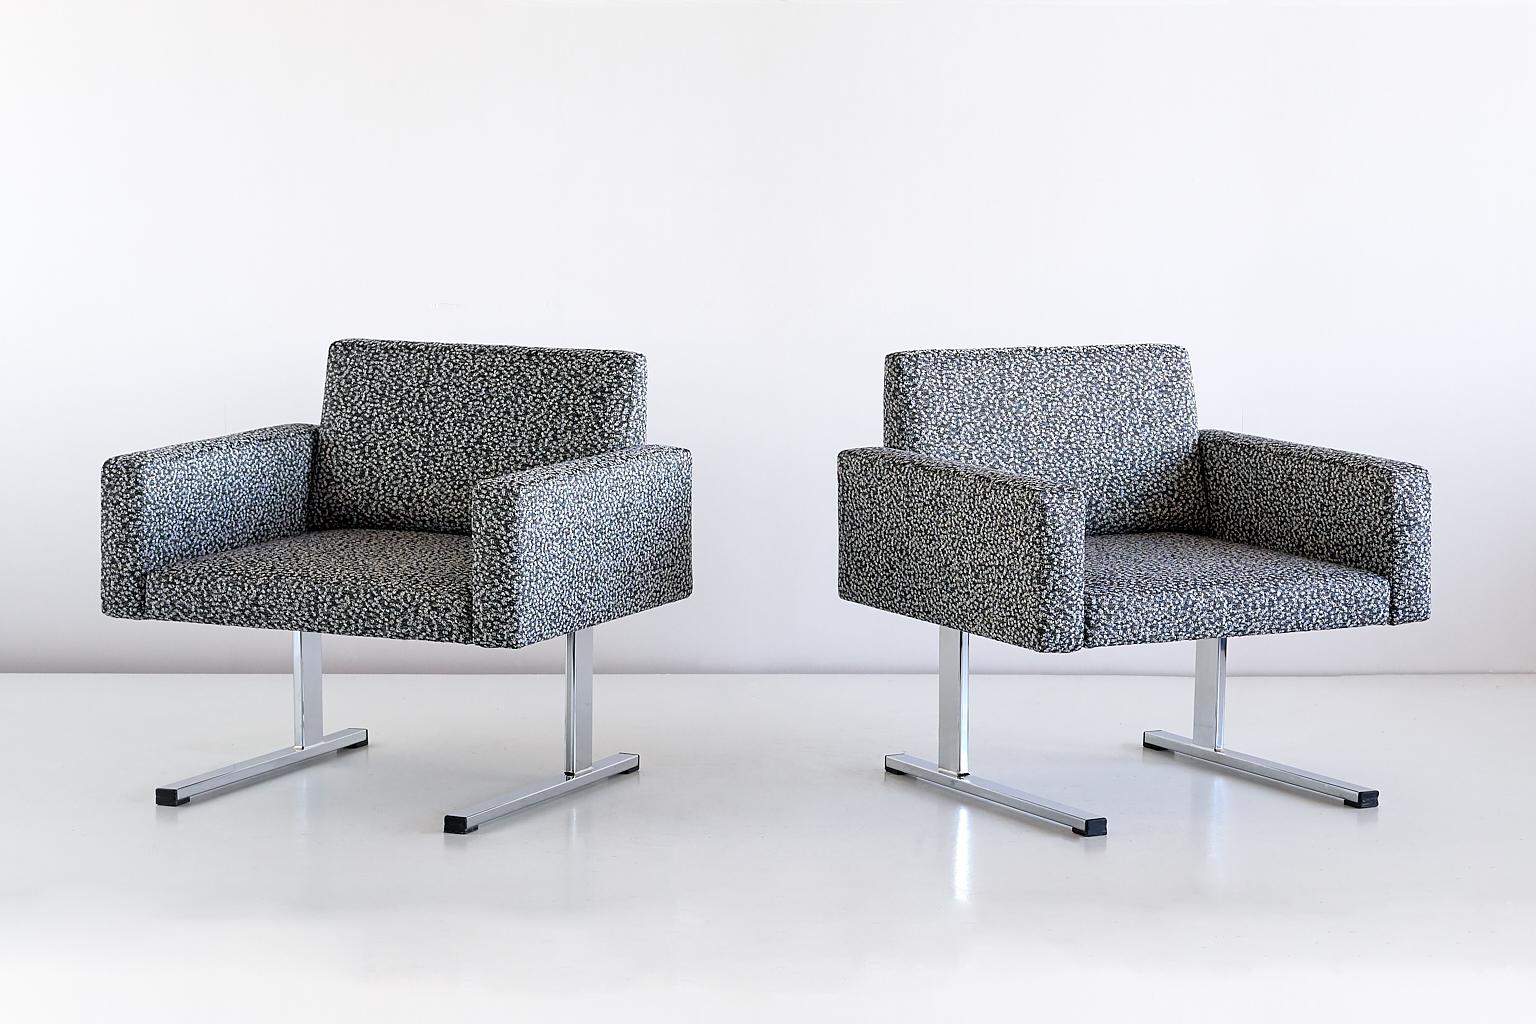 Cette paire de chaises longues exceptionnellement rare a été conçue par Esko Pajamies et produite par la société finlandaise Merva dans les années 1960. La forme rectangulaire de l'assise, des accoudoirs et du dossier donne à la chaise un aspect